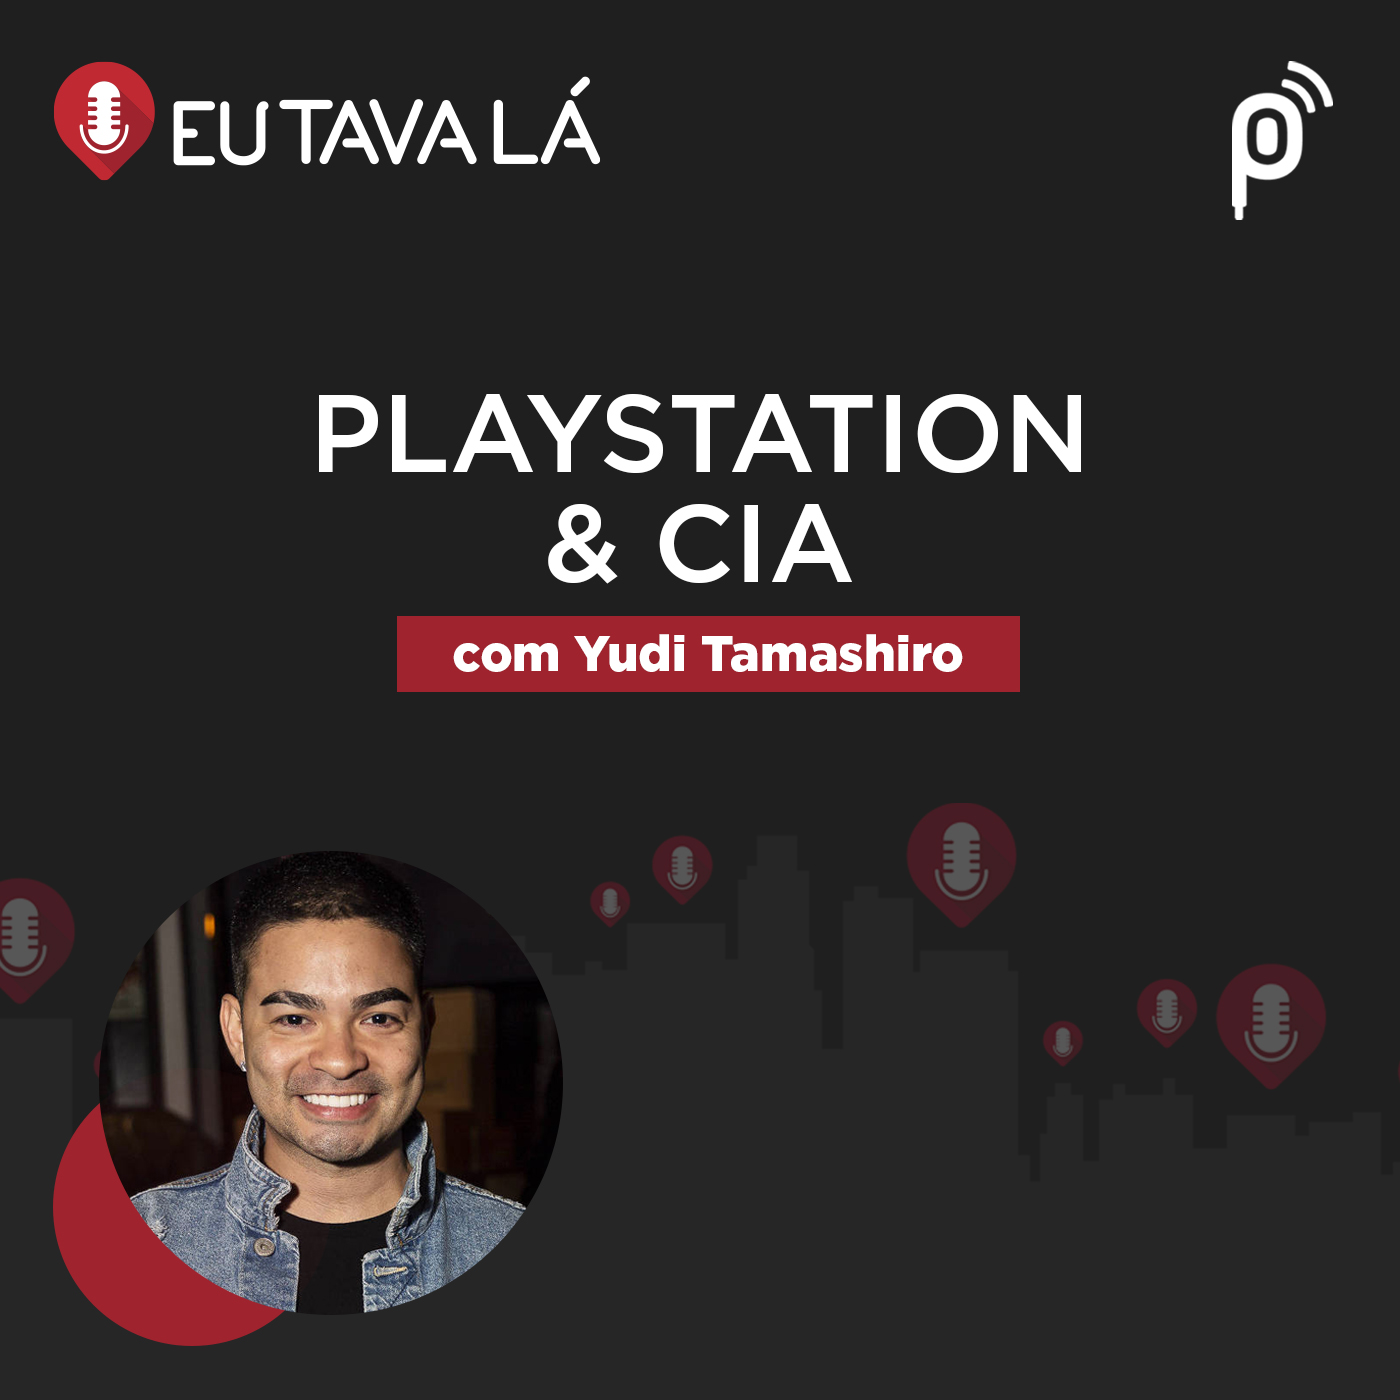 PLAYSTATION & CIA (com Yudi Tamashiro) – Eu Tava Lá #119 – Eu tava lá |  Podcast